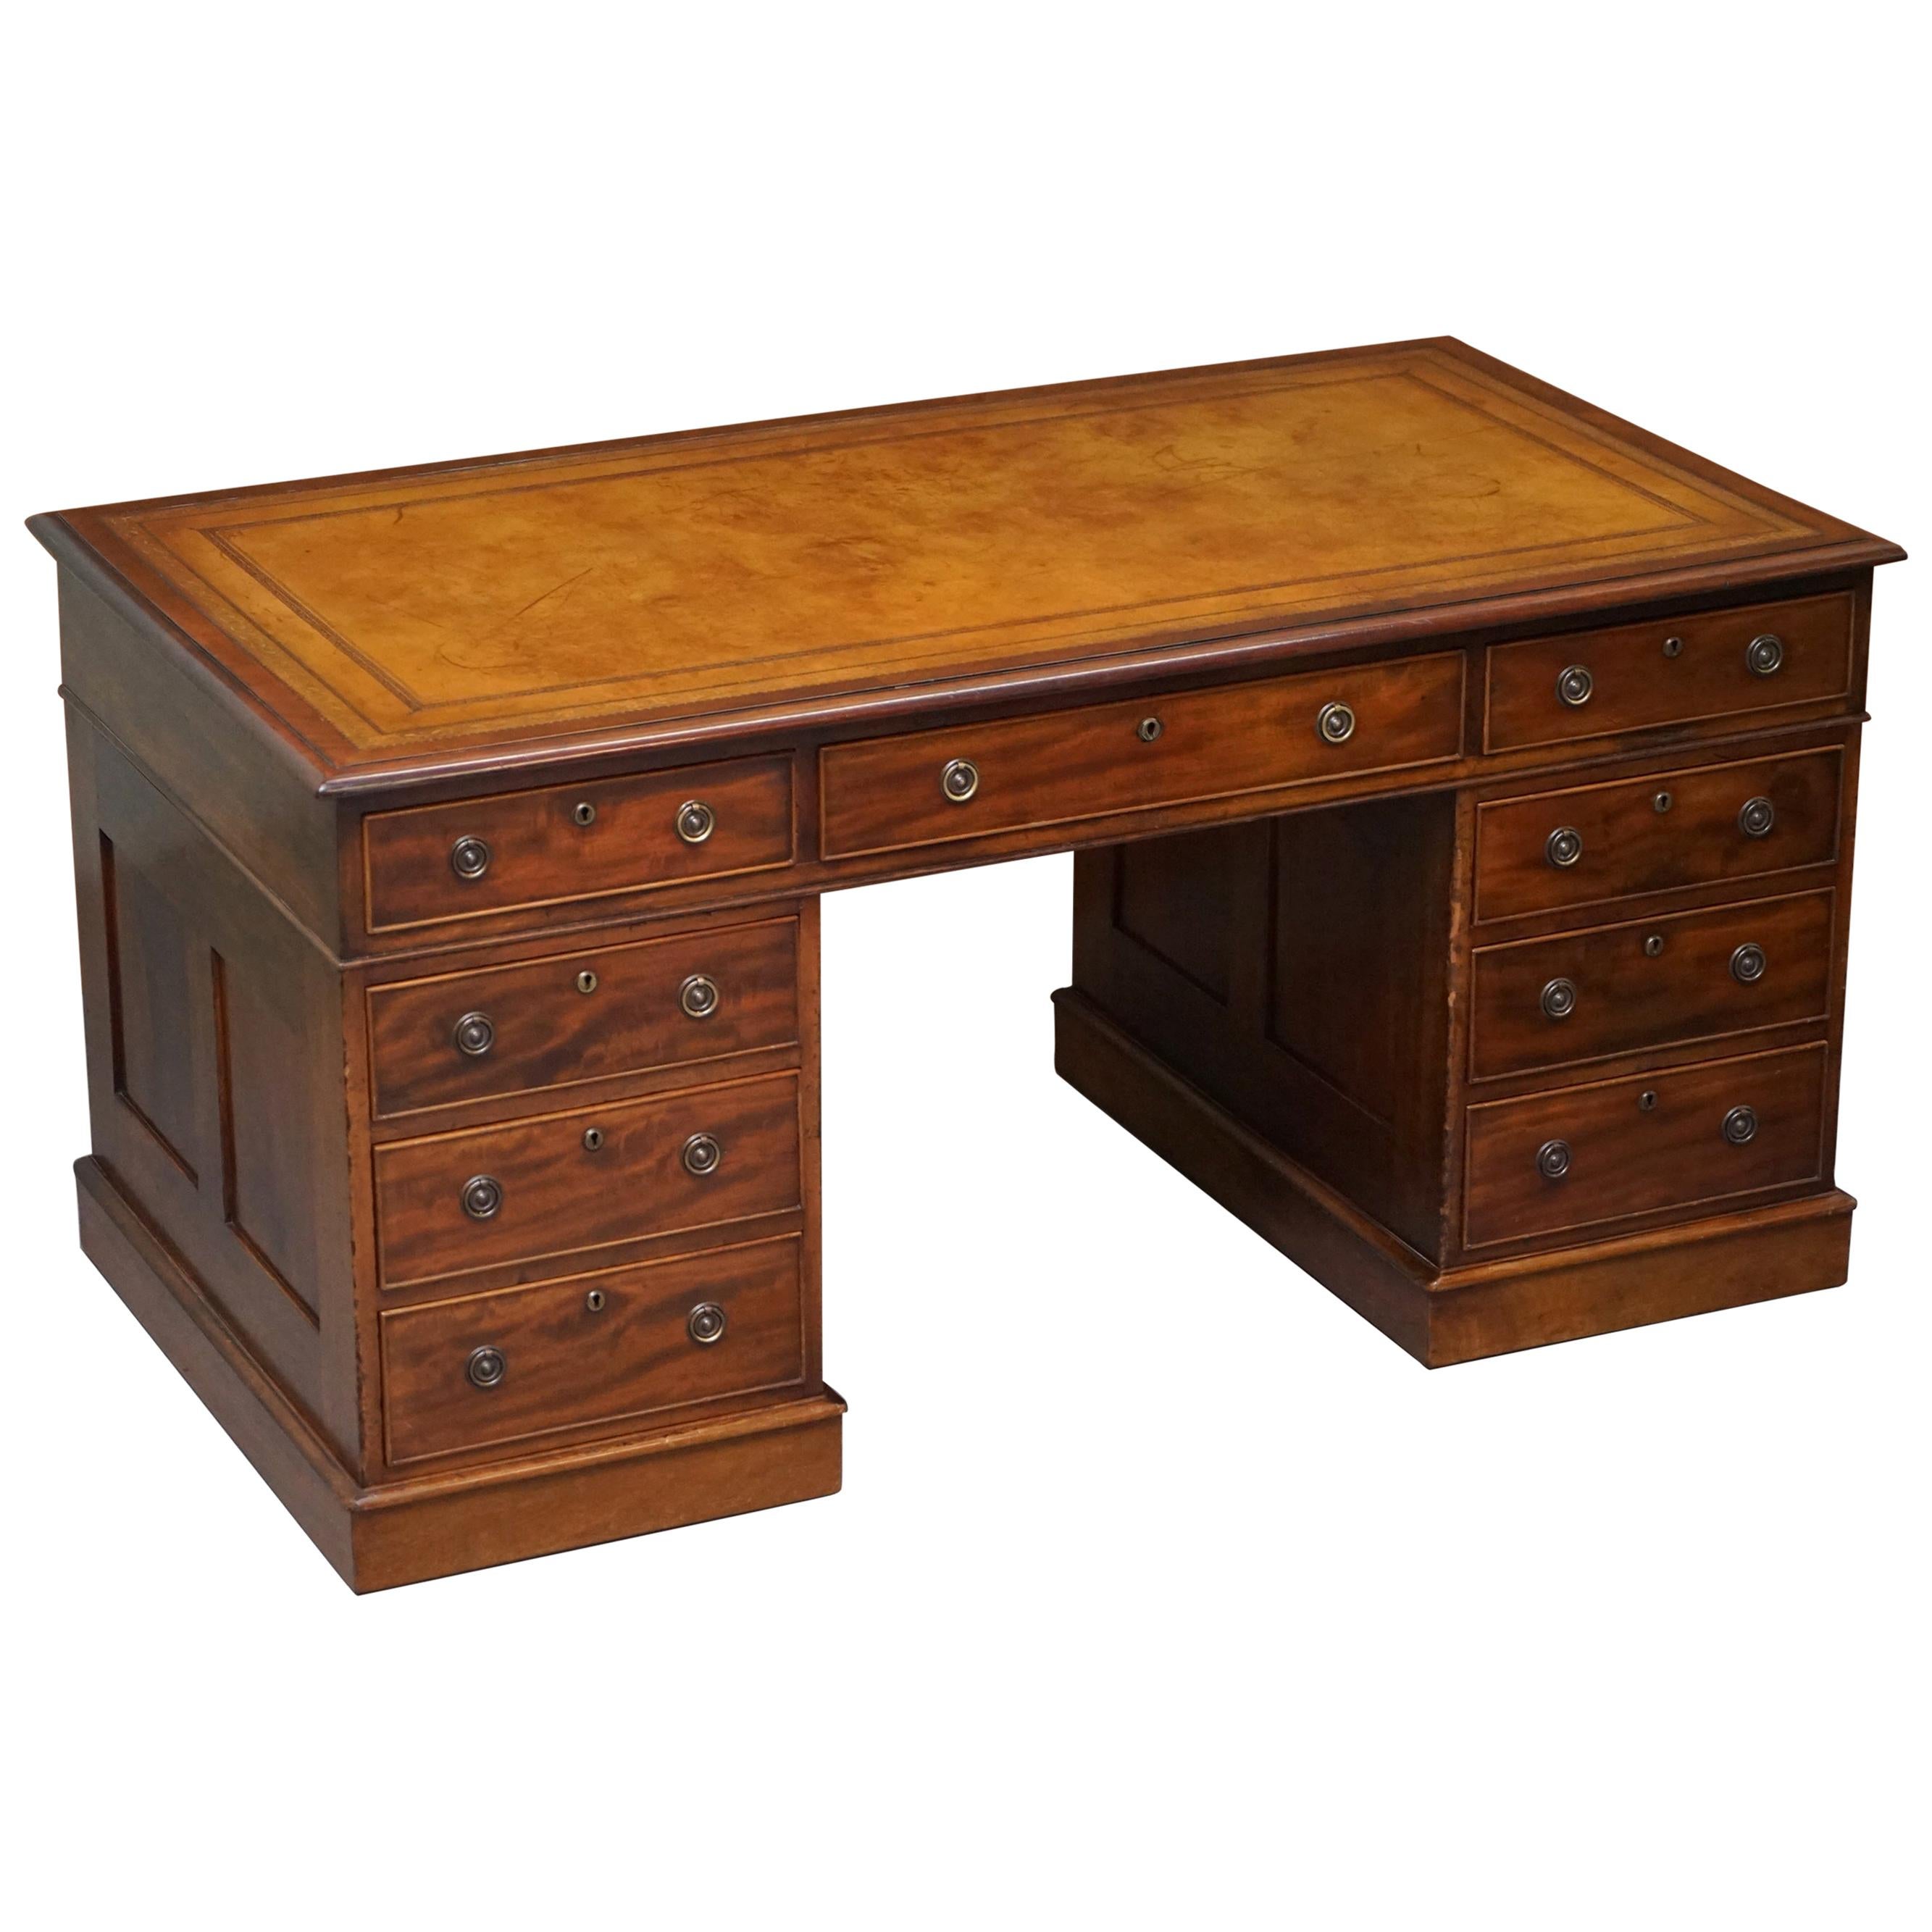 Restored Antique Regency circa 1810-1820 Hardwood Pedestal Desk Brown Leather